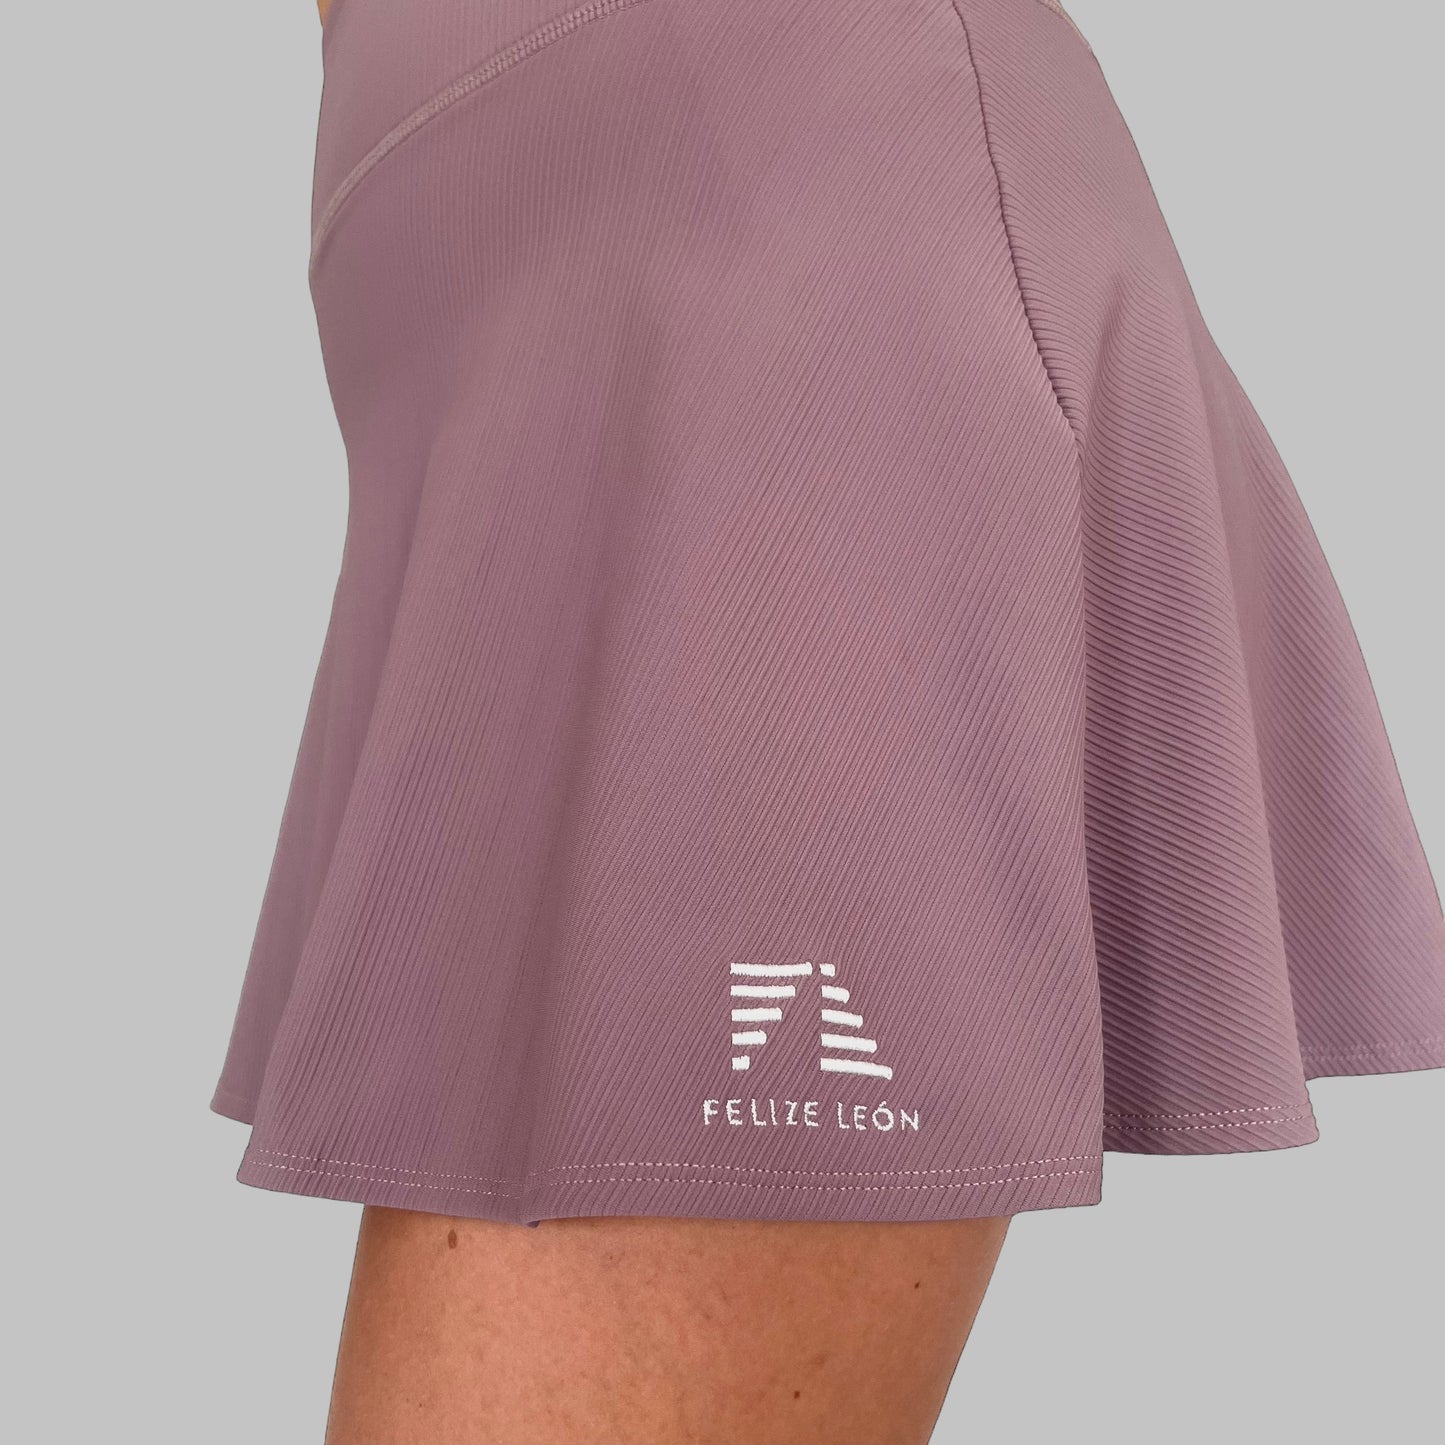 Närbild på det ribbade tyget av Maya Ribbed Skirt i dusty purple, visar texturen och kvaliteten på materialet.